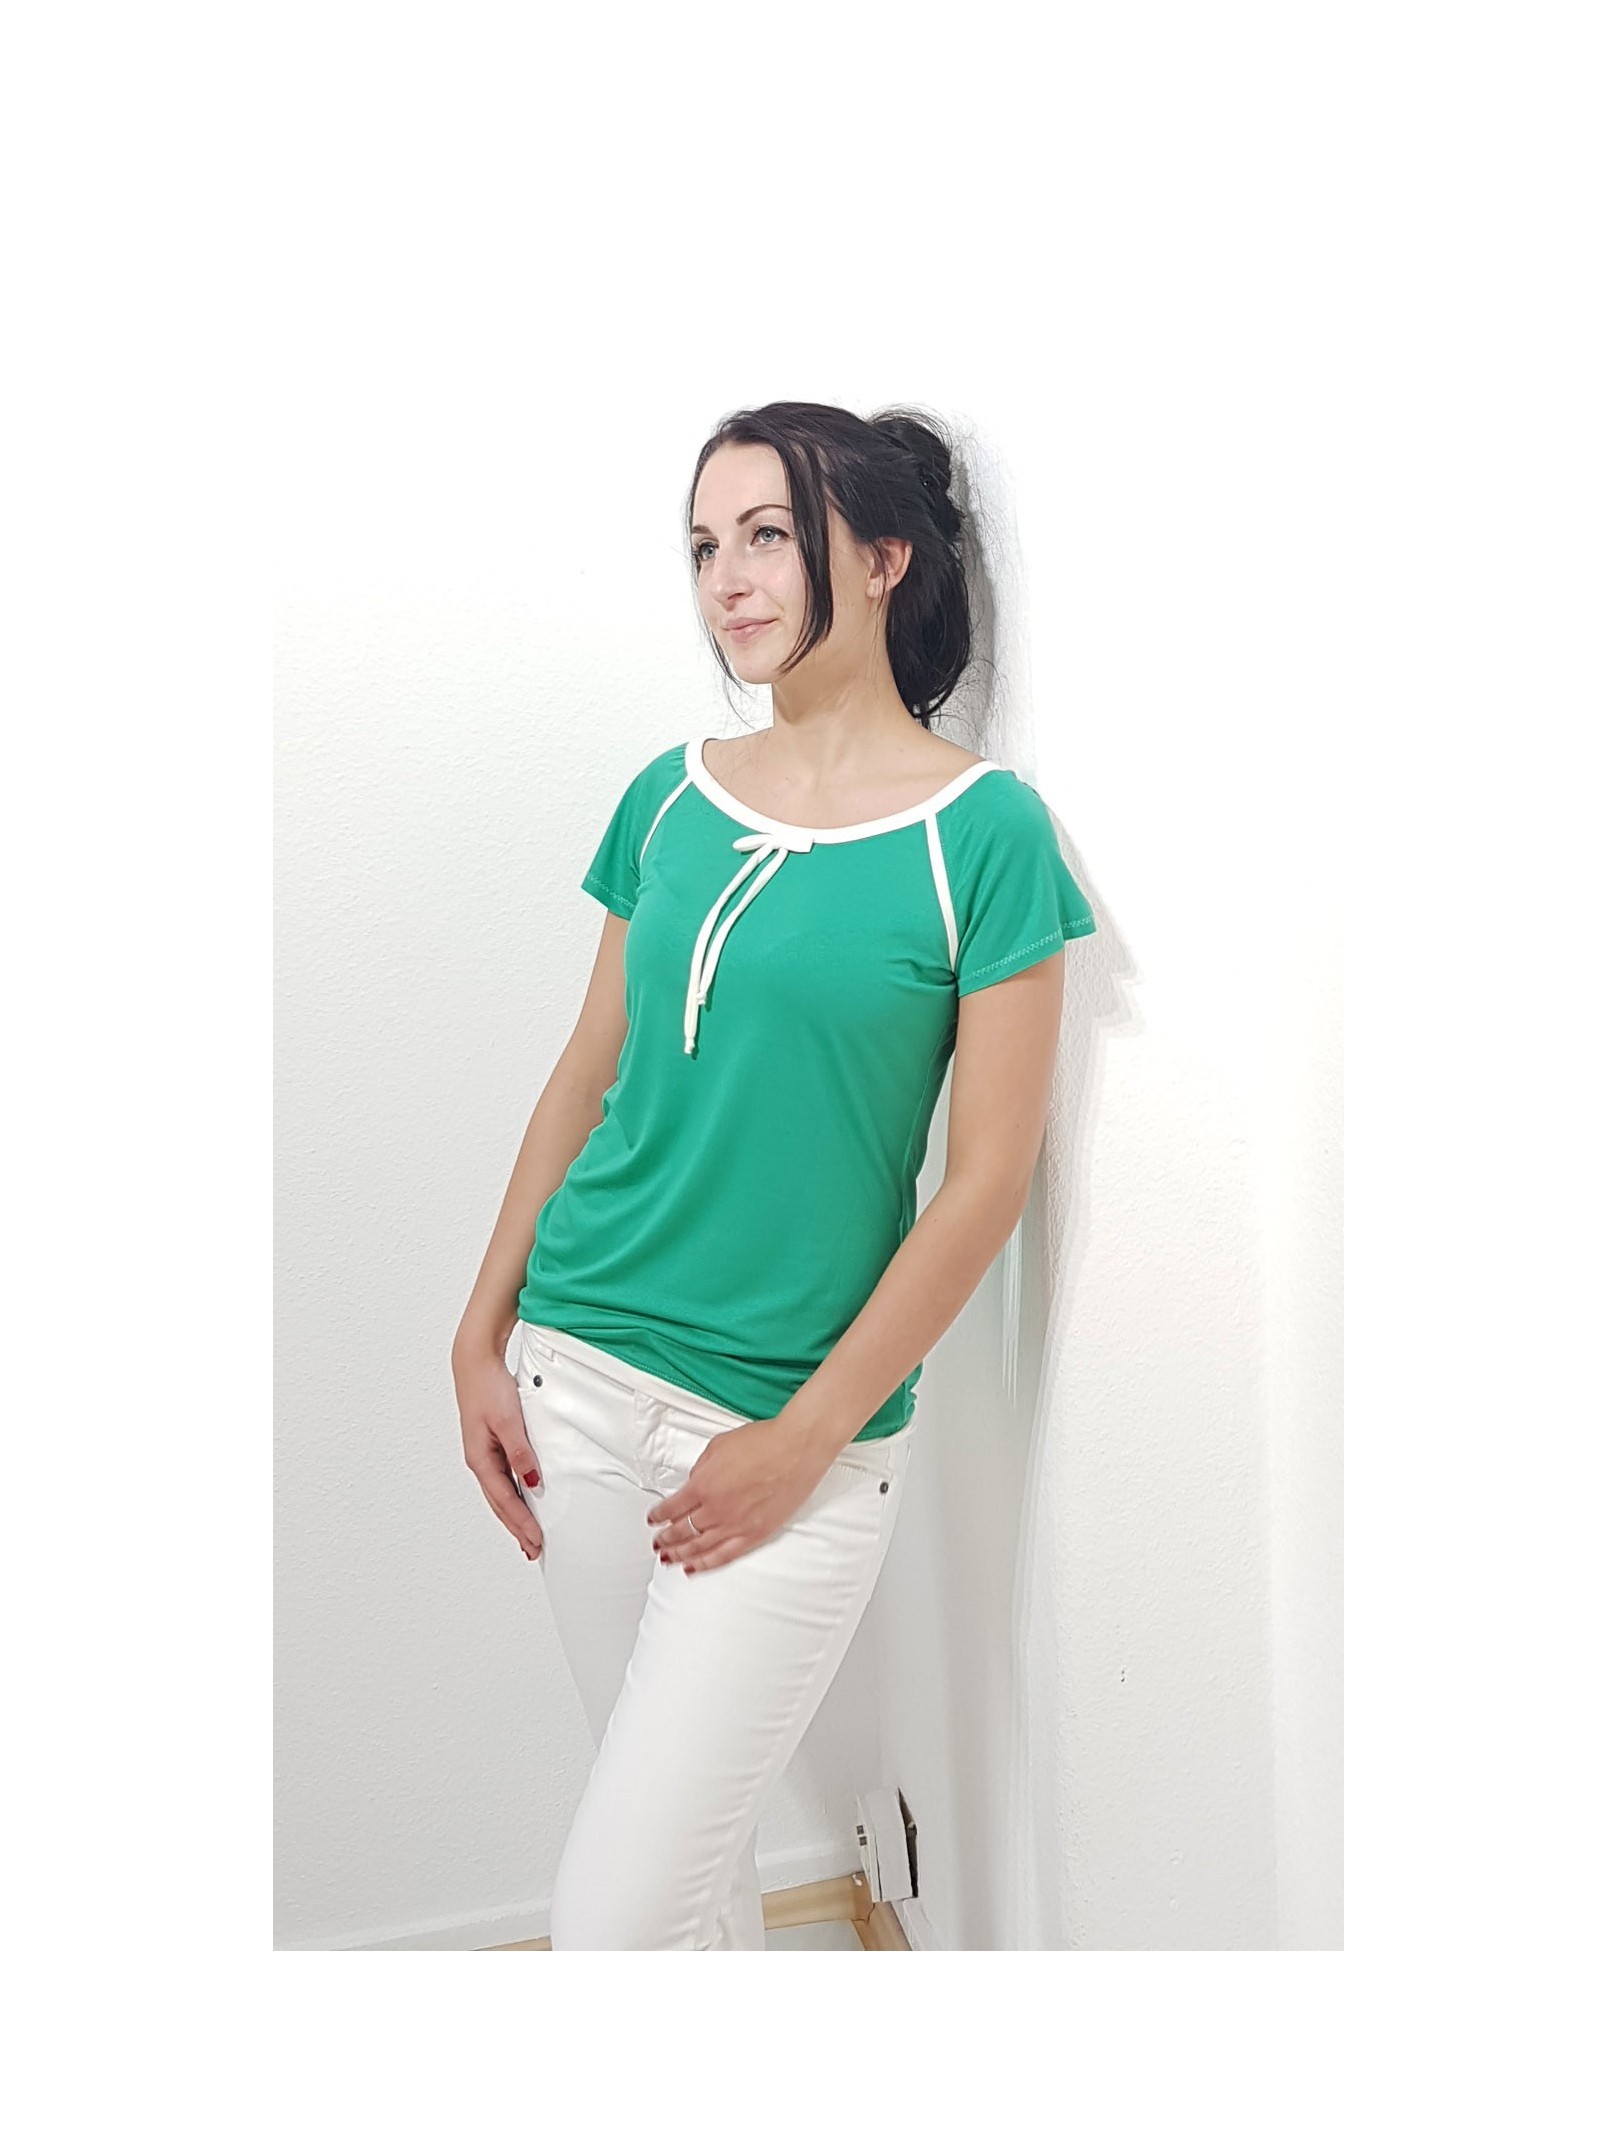 Designer T-Shirt in Grün und Creme Weiß, Retro Style, Damen Mode.